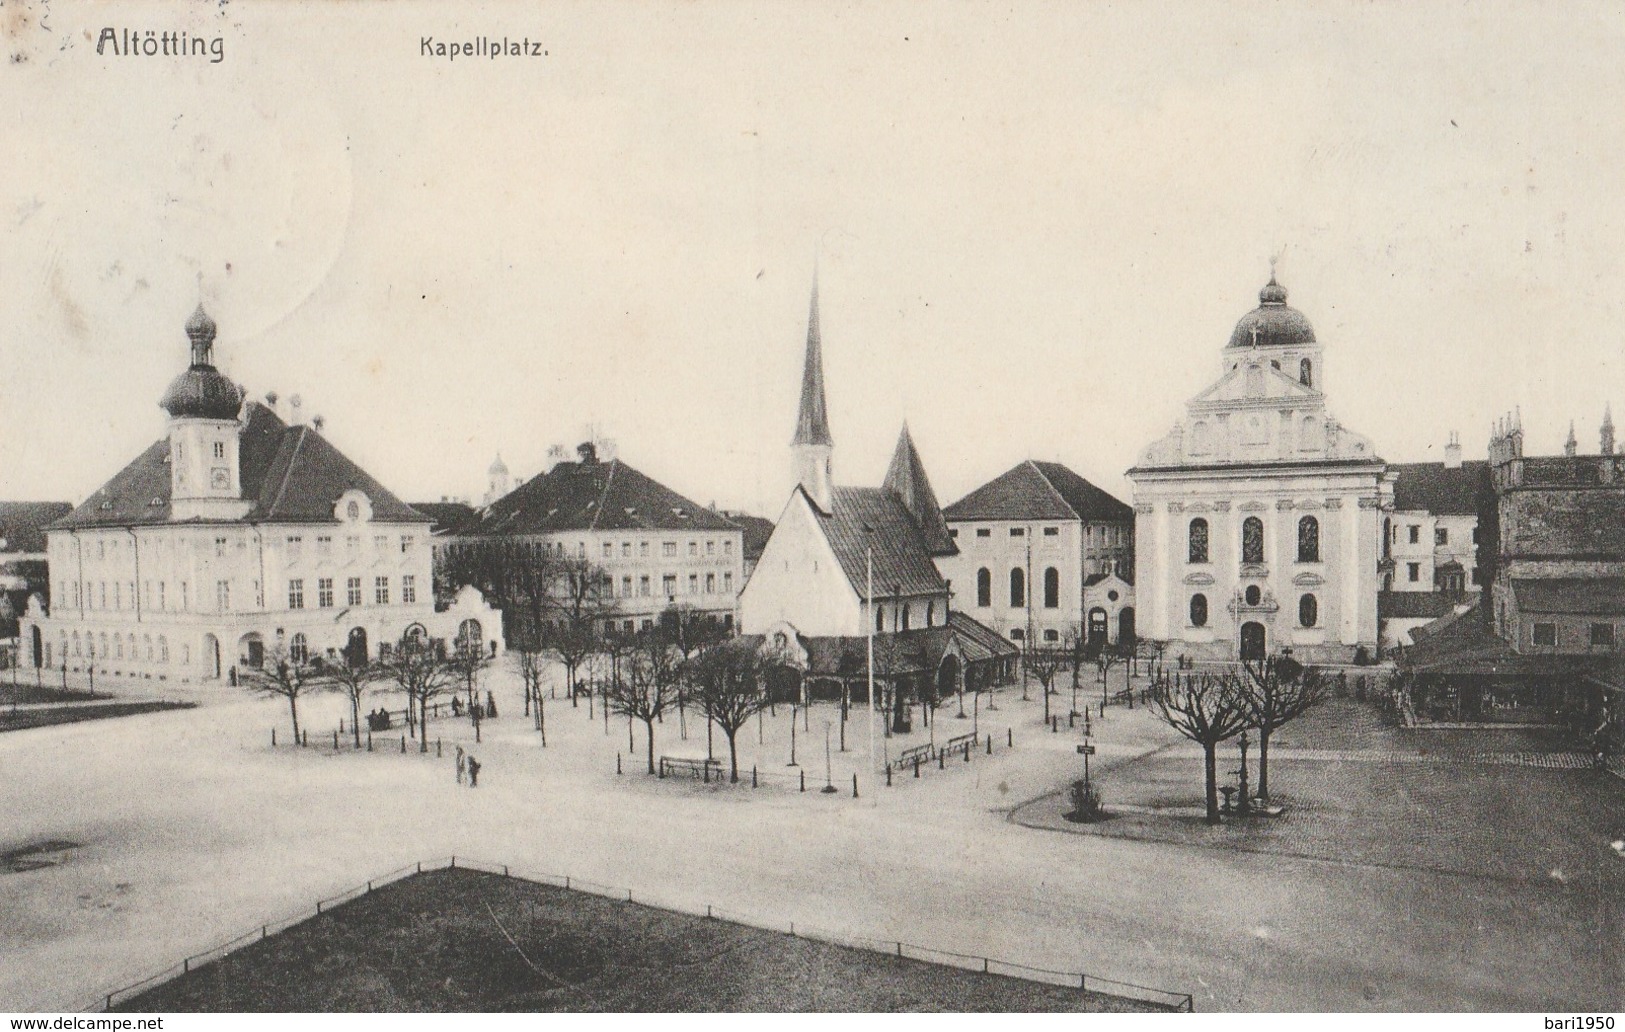 Altotting - Kapellplatz - Altoetting